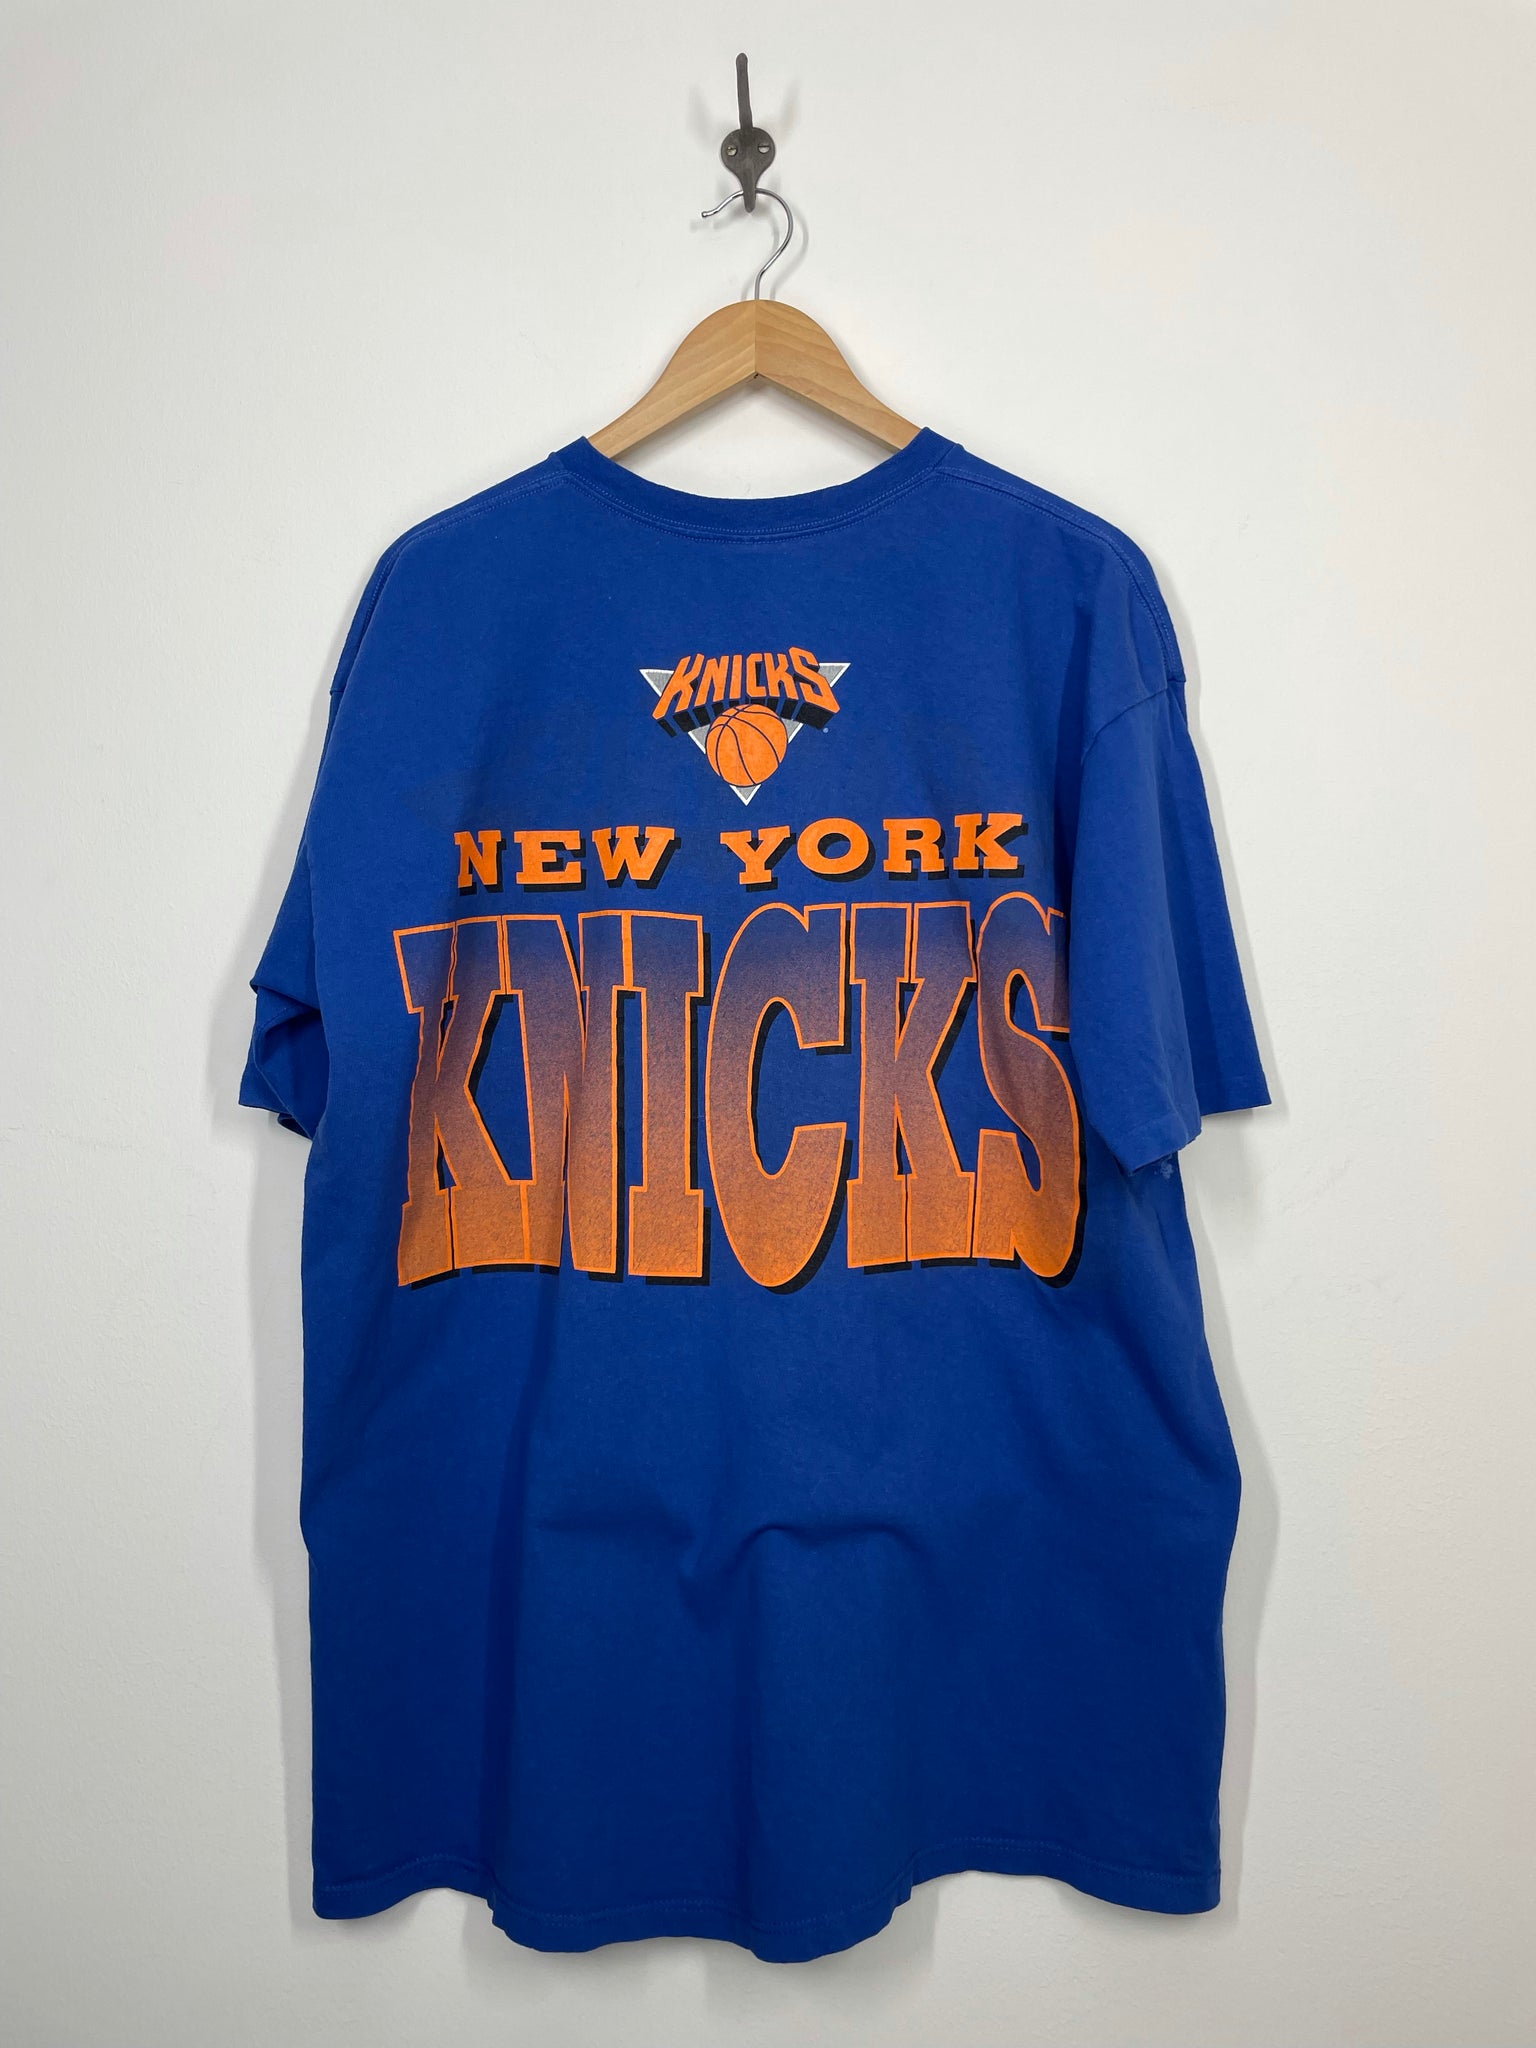 Blank NY Knicks Basketball Jerseys, Throwback Knicks